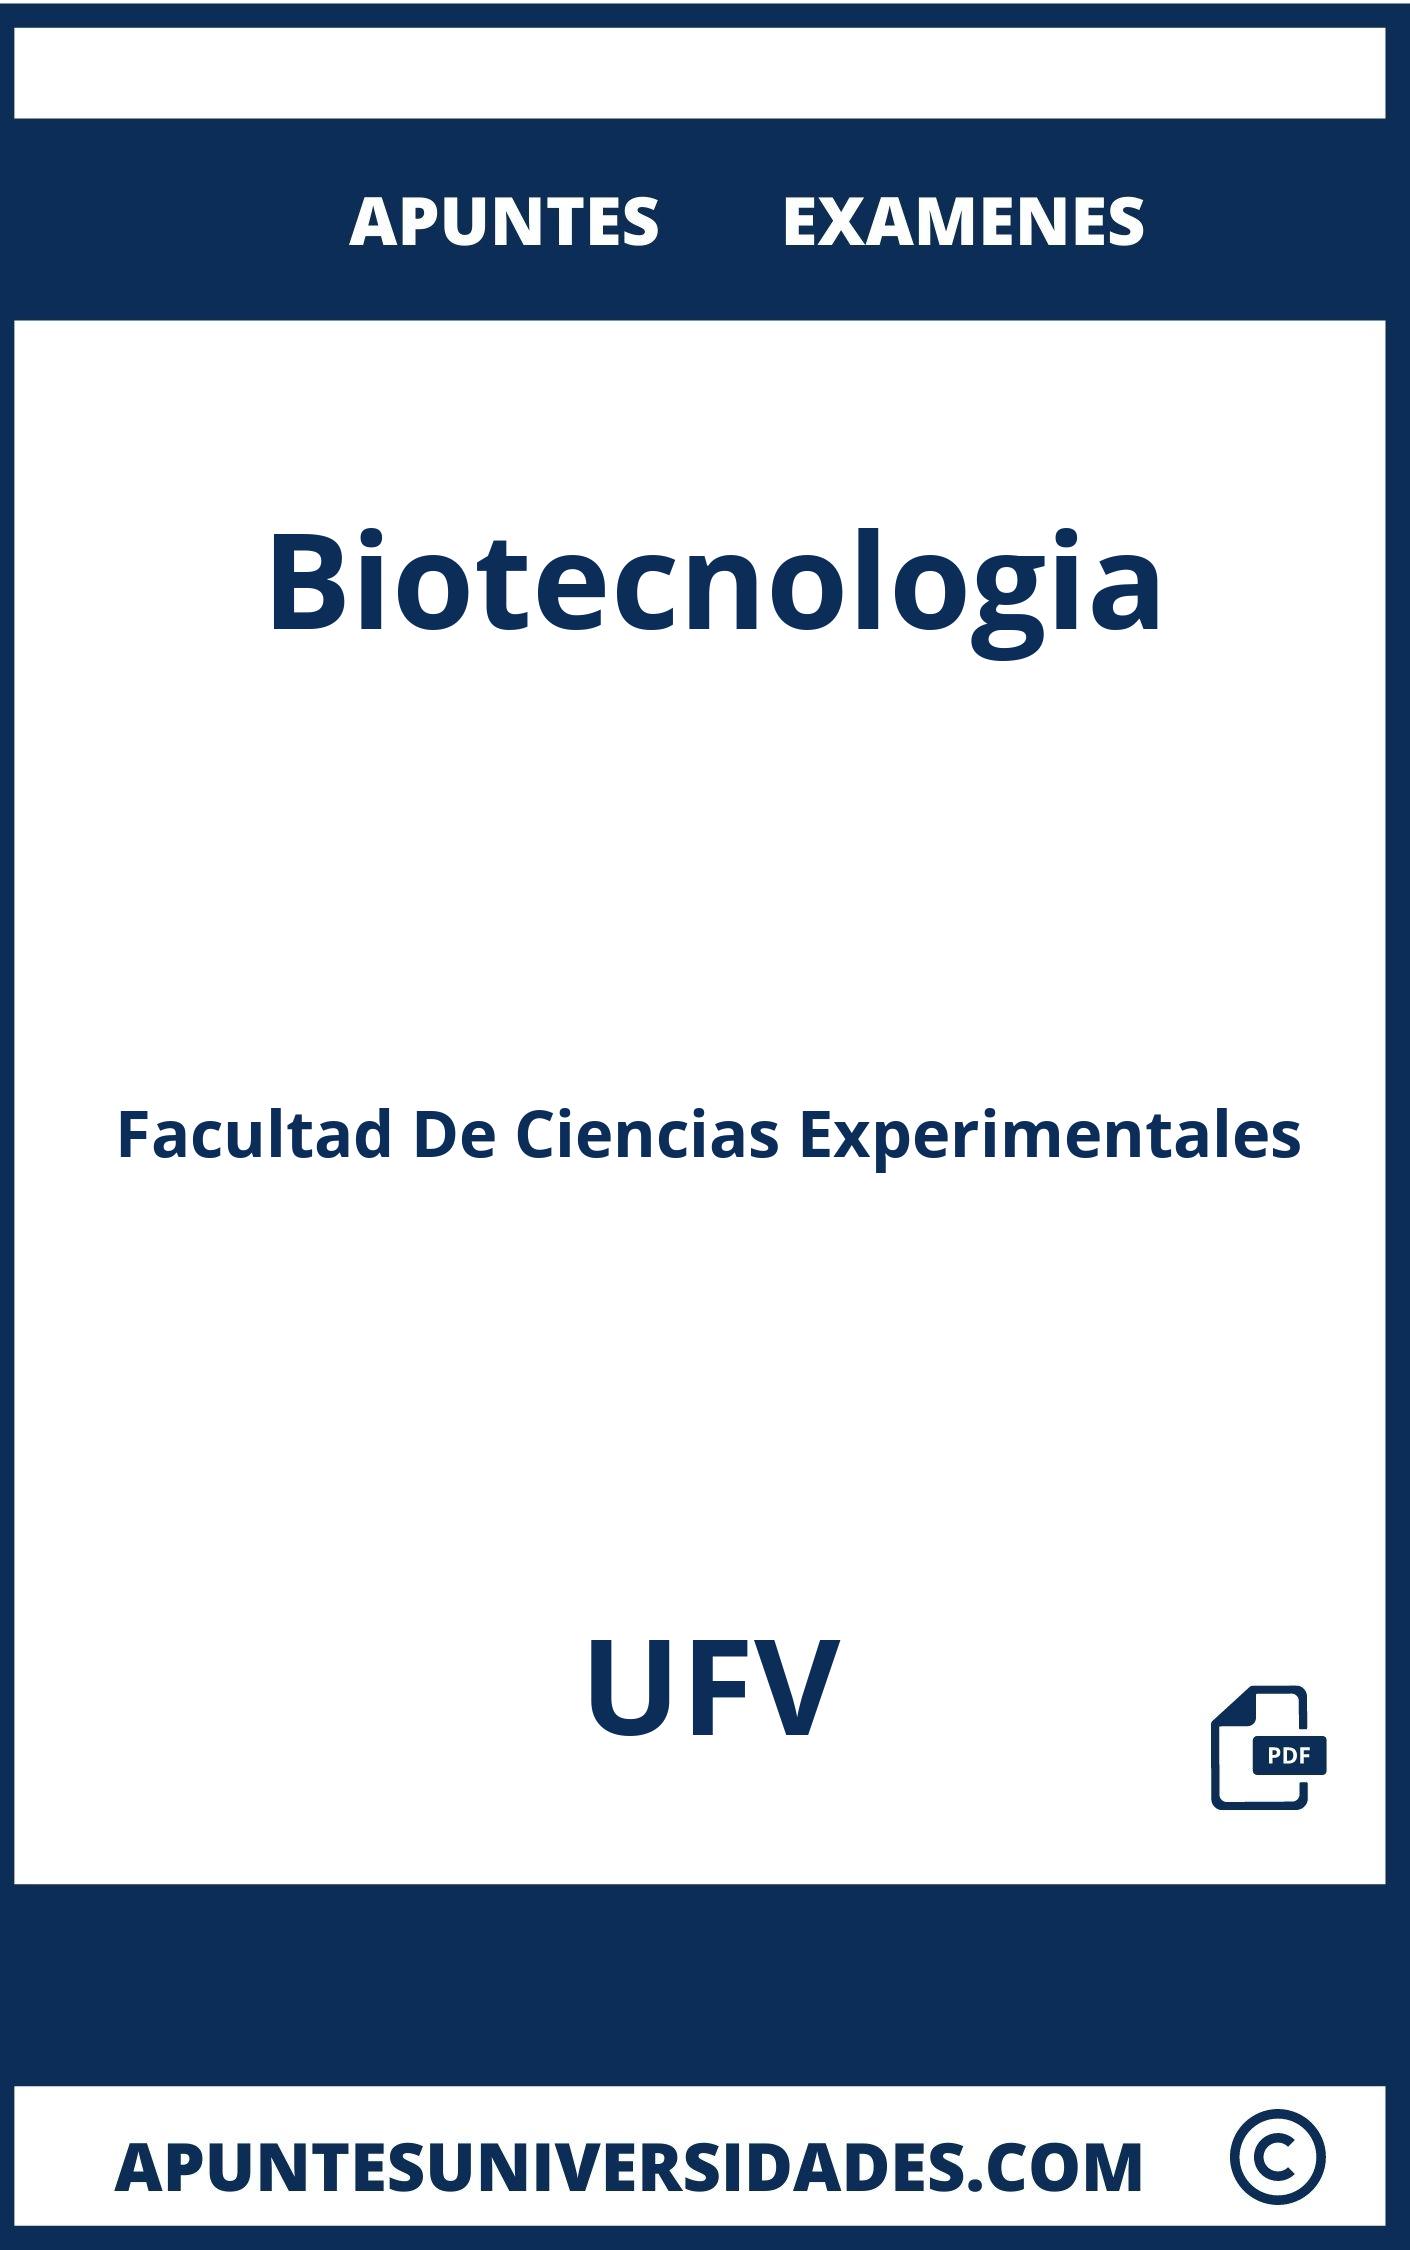 Examenes y Apuntes de Biotecnologia UFV